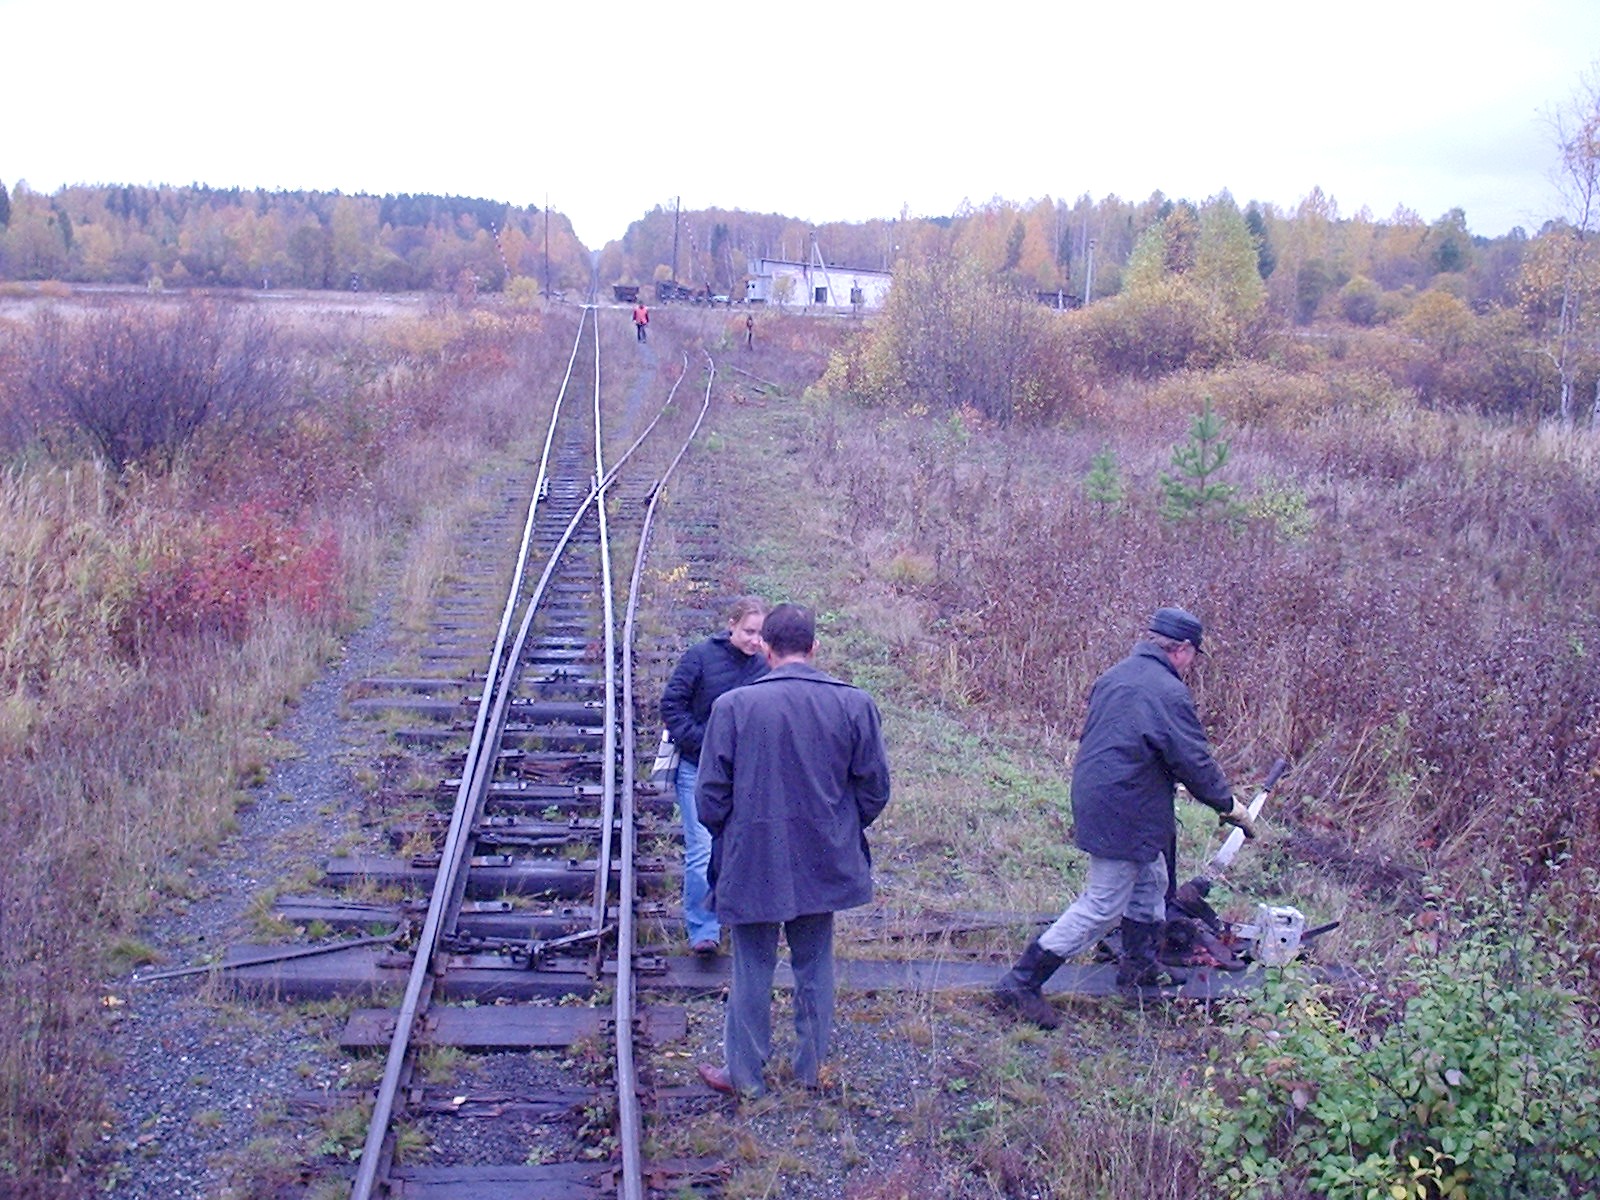 Висимо-Уткинская узкоколейная железная дорога  - фотографии, сделанные в 2006 году (часть 5)